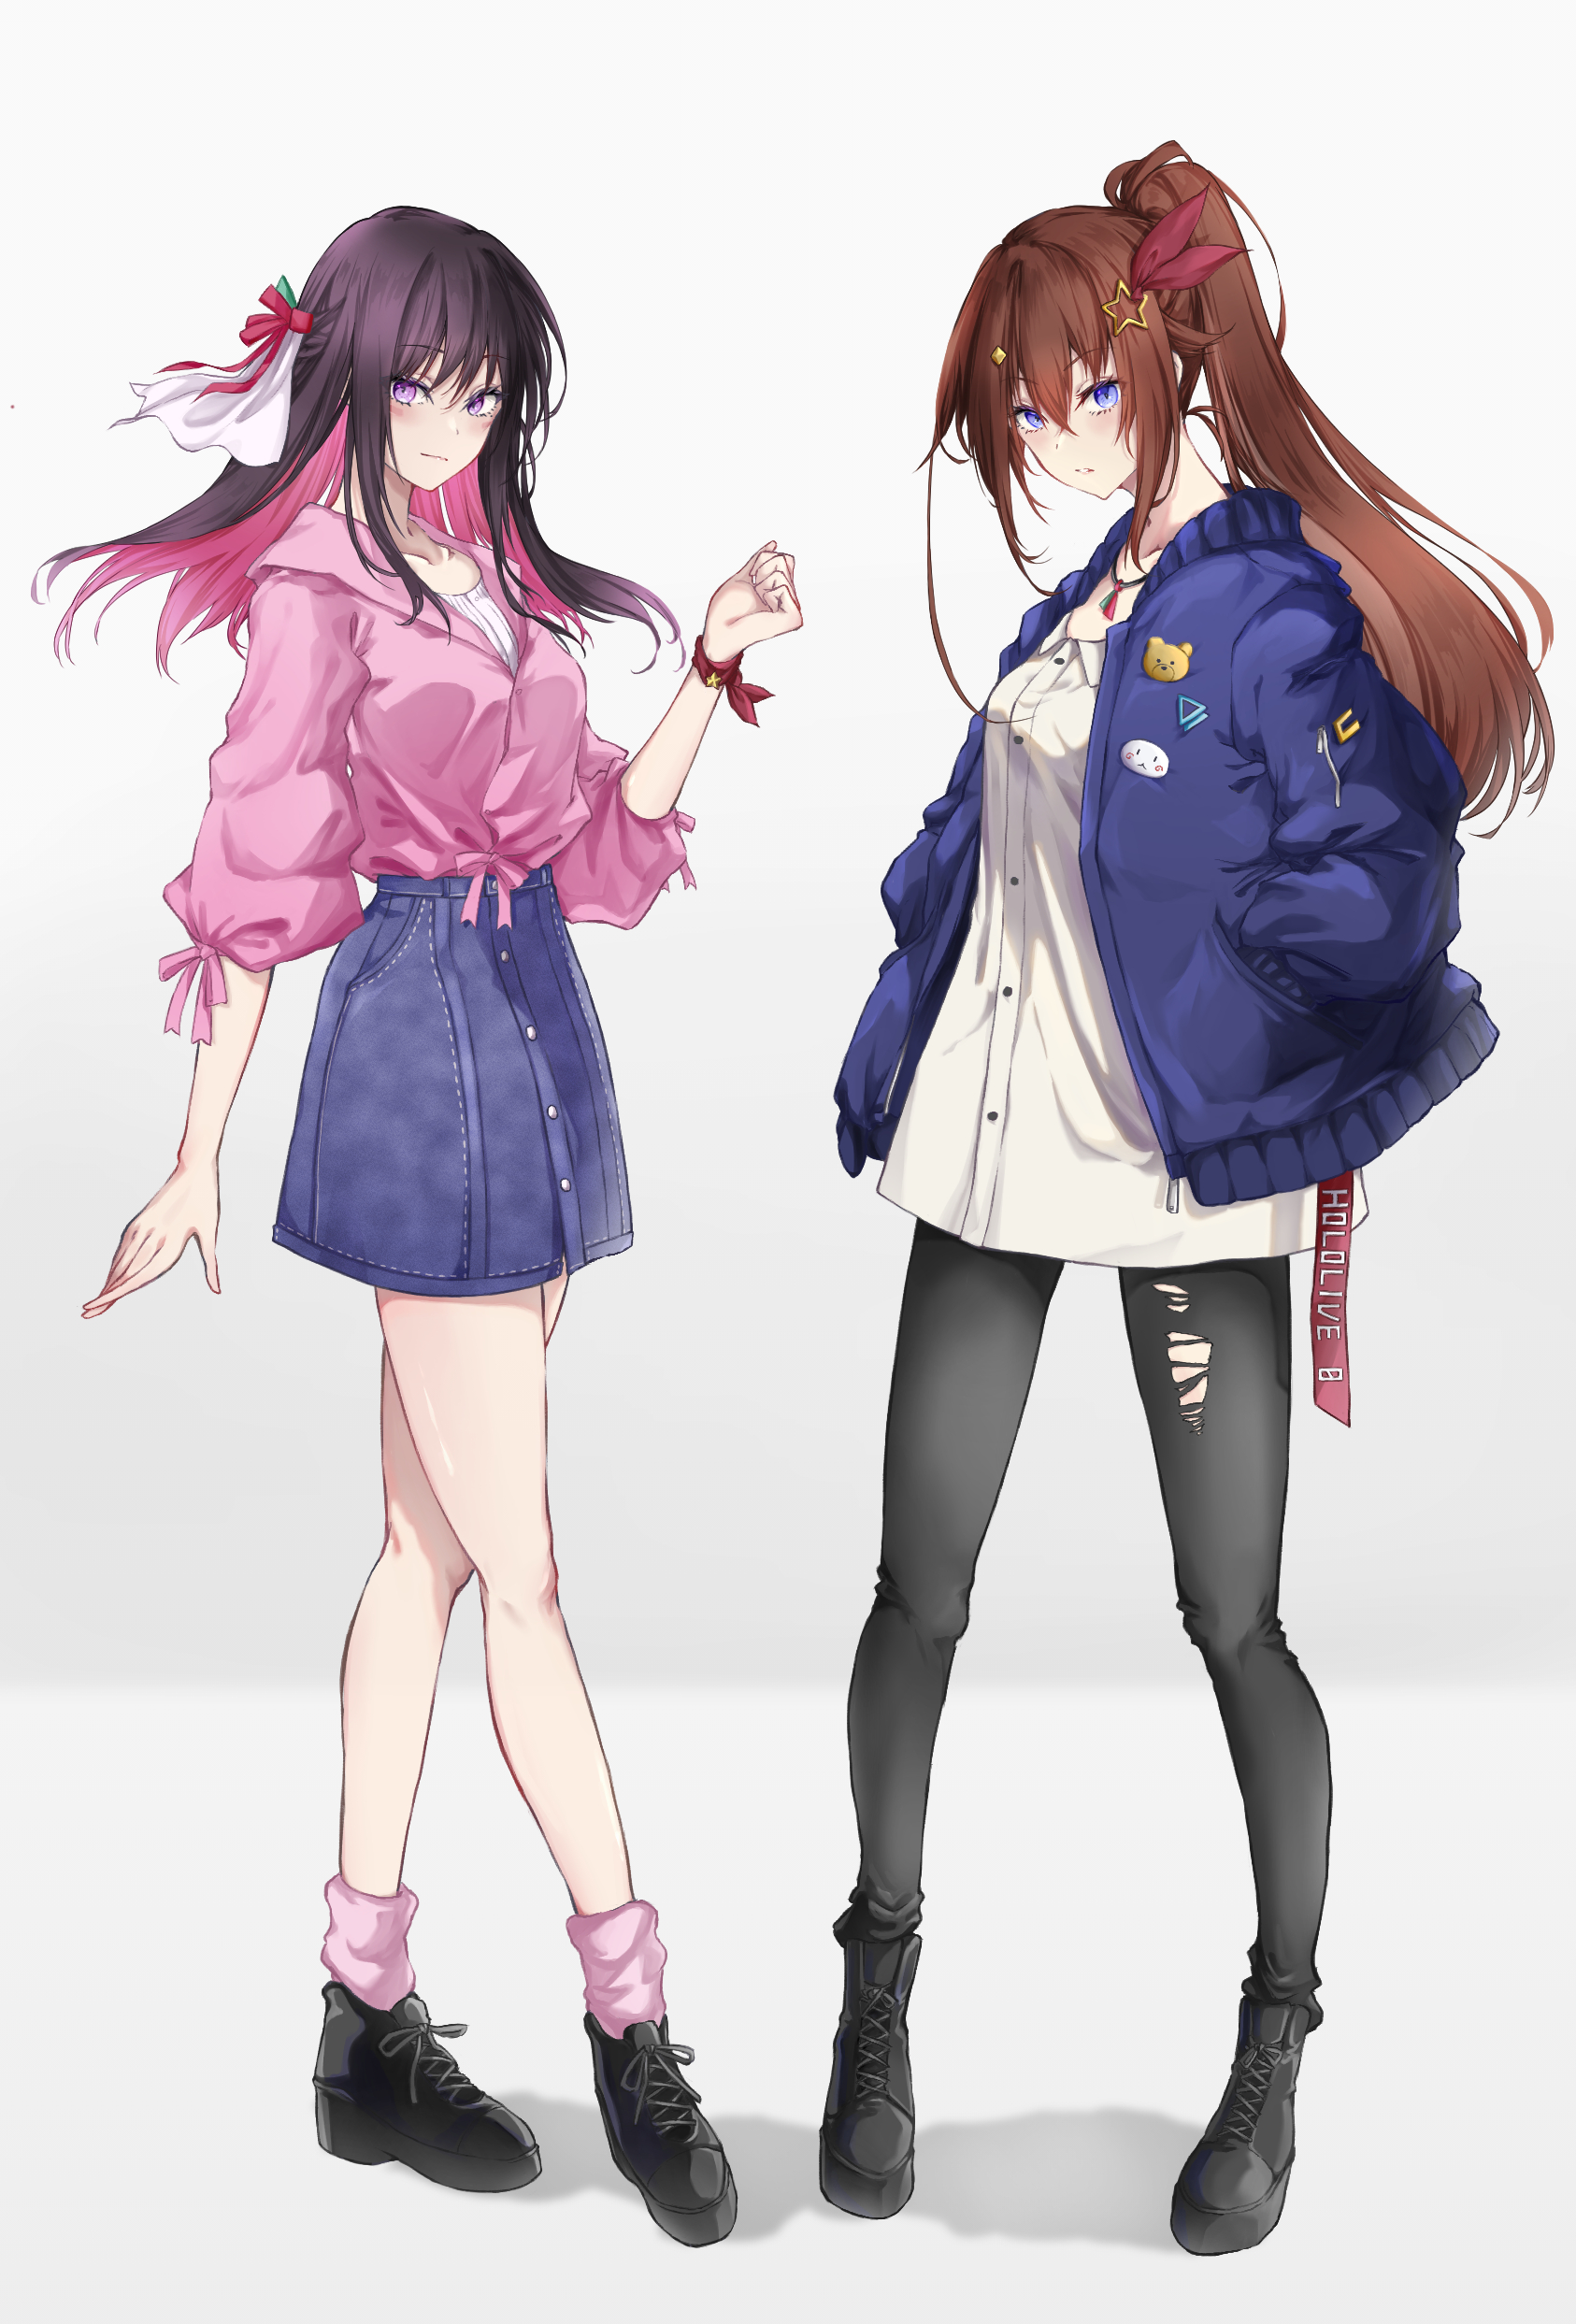 Anime Anime Girls Virtual Youtuber Hololive AZKi Tokino Sora Artwork Digital Art Fan Art Brunette Bl 1686x2486